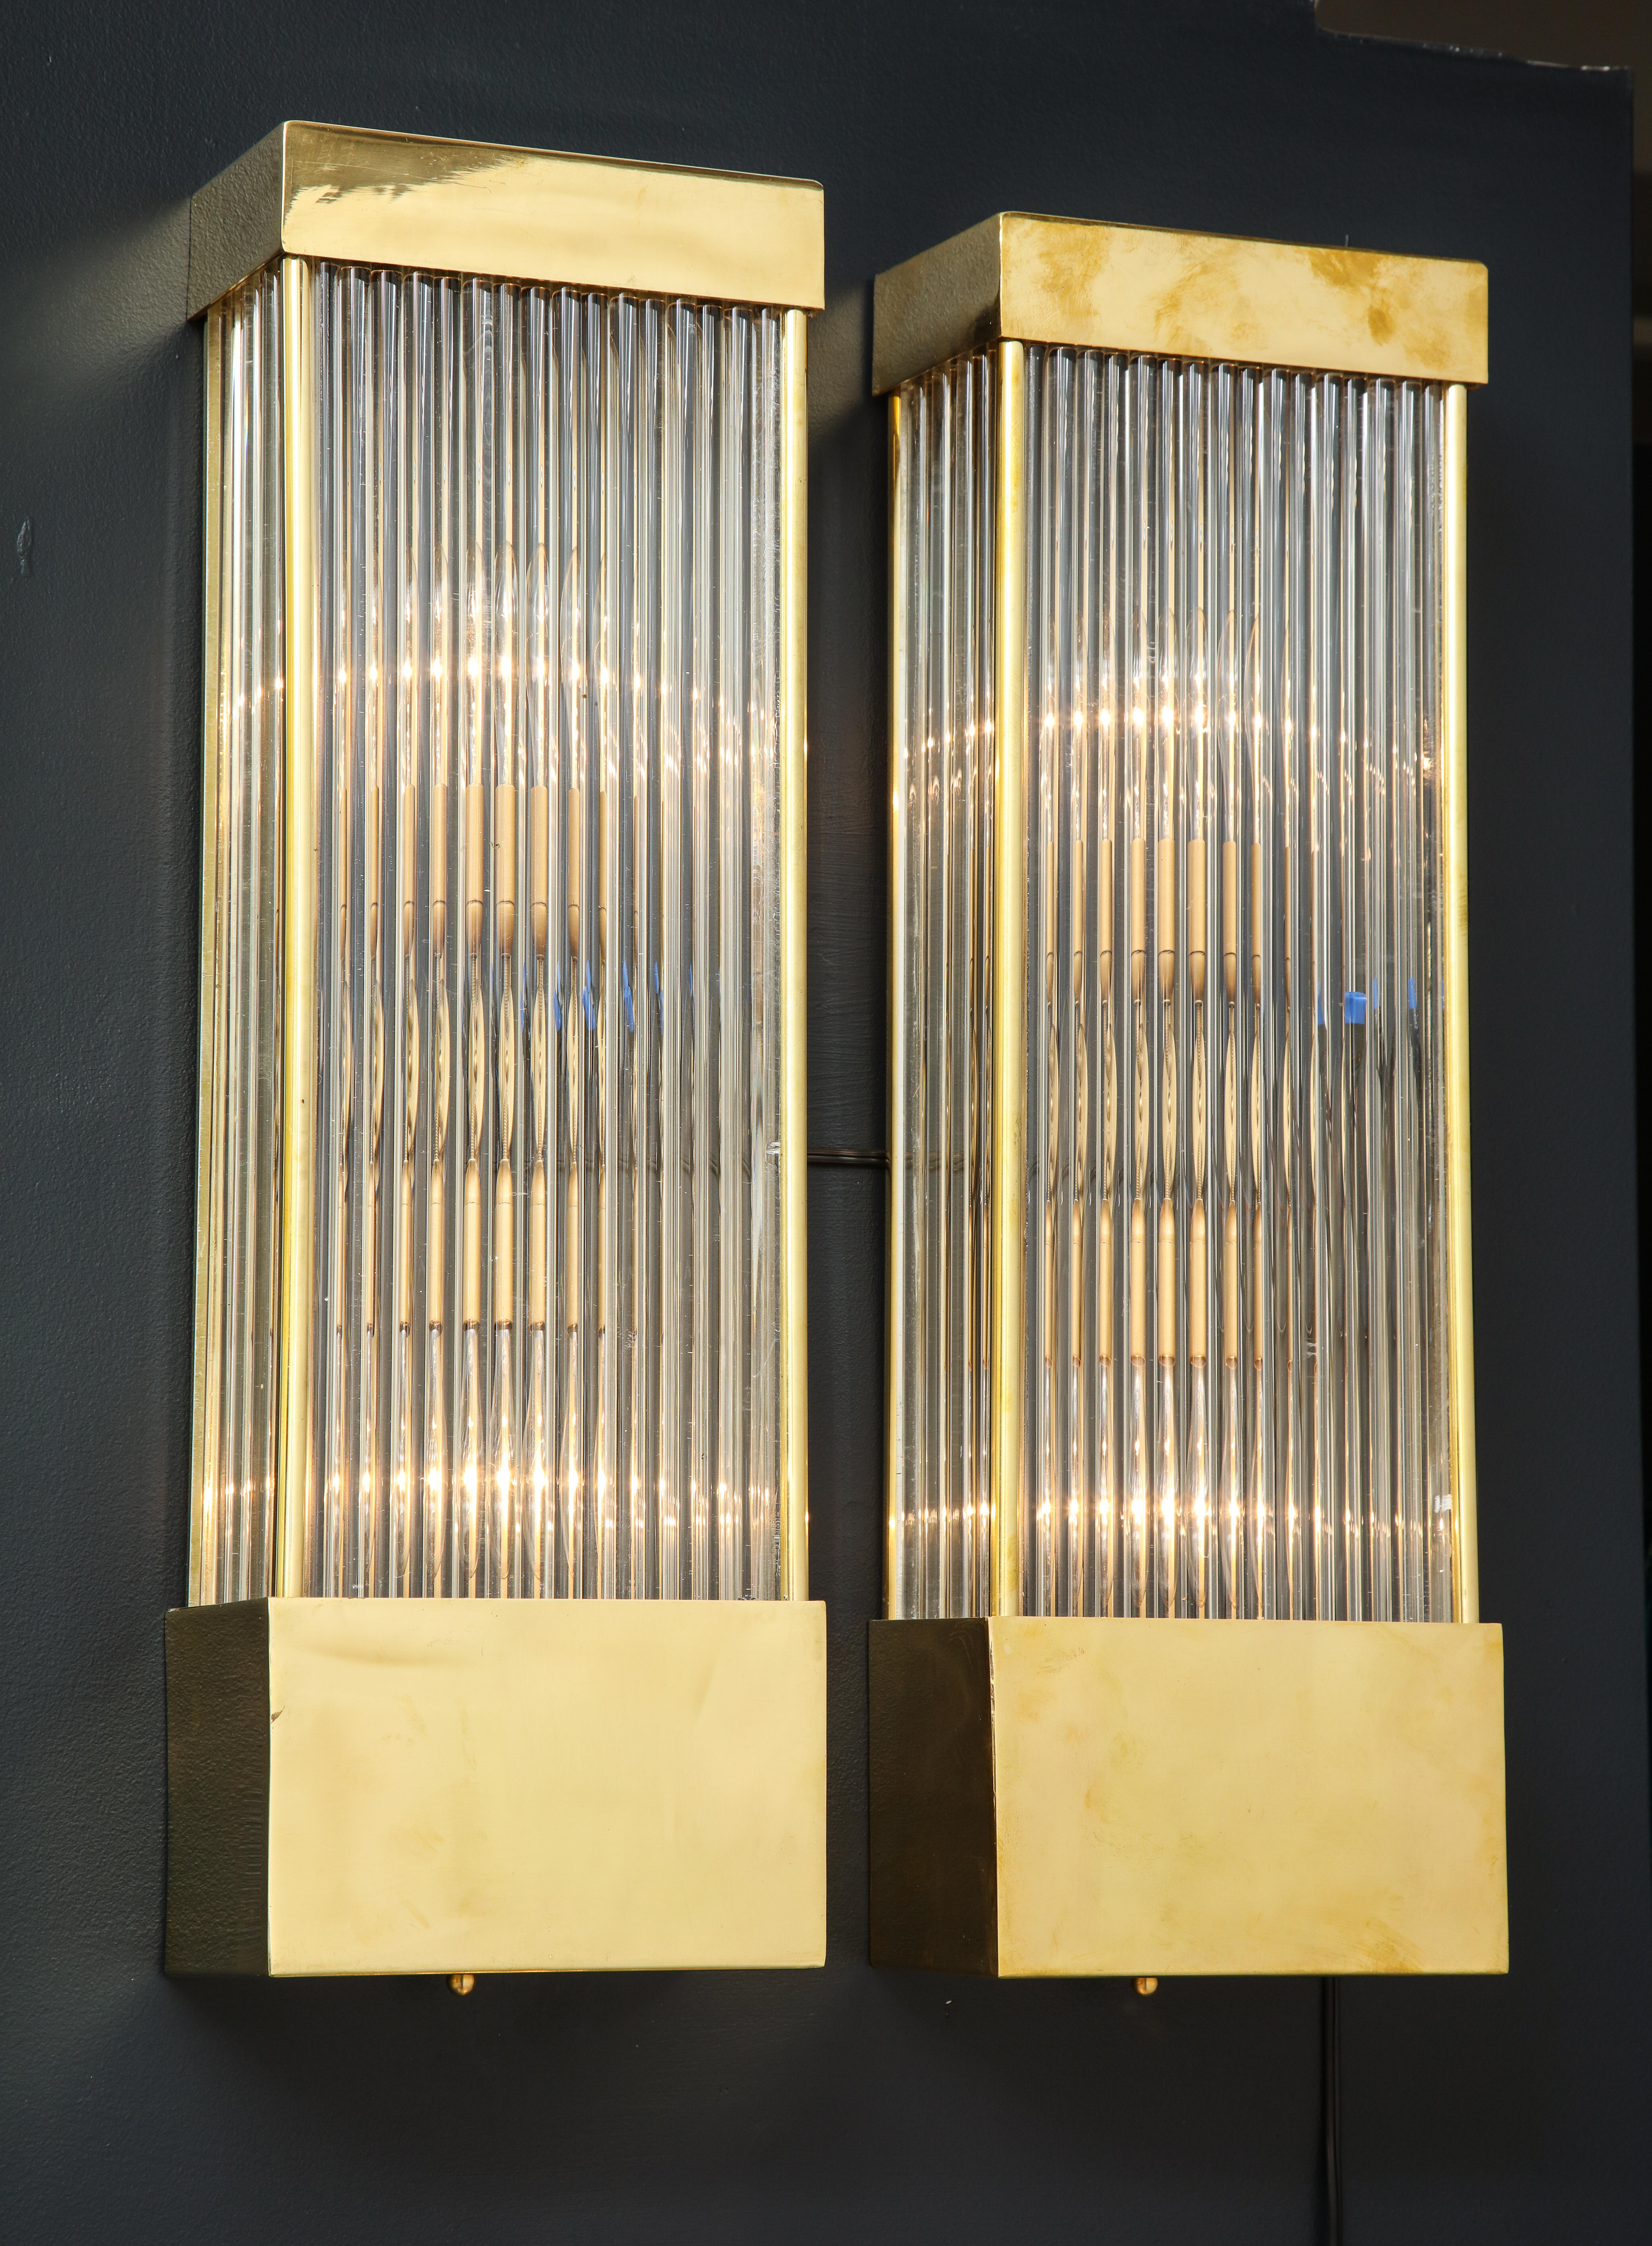 Grande paire d'appliques rectangulaires en verre clair de Murano avec cadre en laiton.  Des tiges étroites en verre clair, moulées à la main, forment le corps de ces appliques qui sont maintenues par les capuchons rectangulaires en laiton à chaque